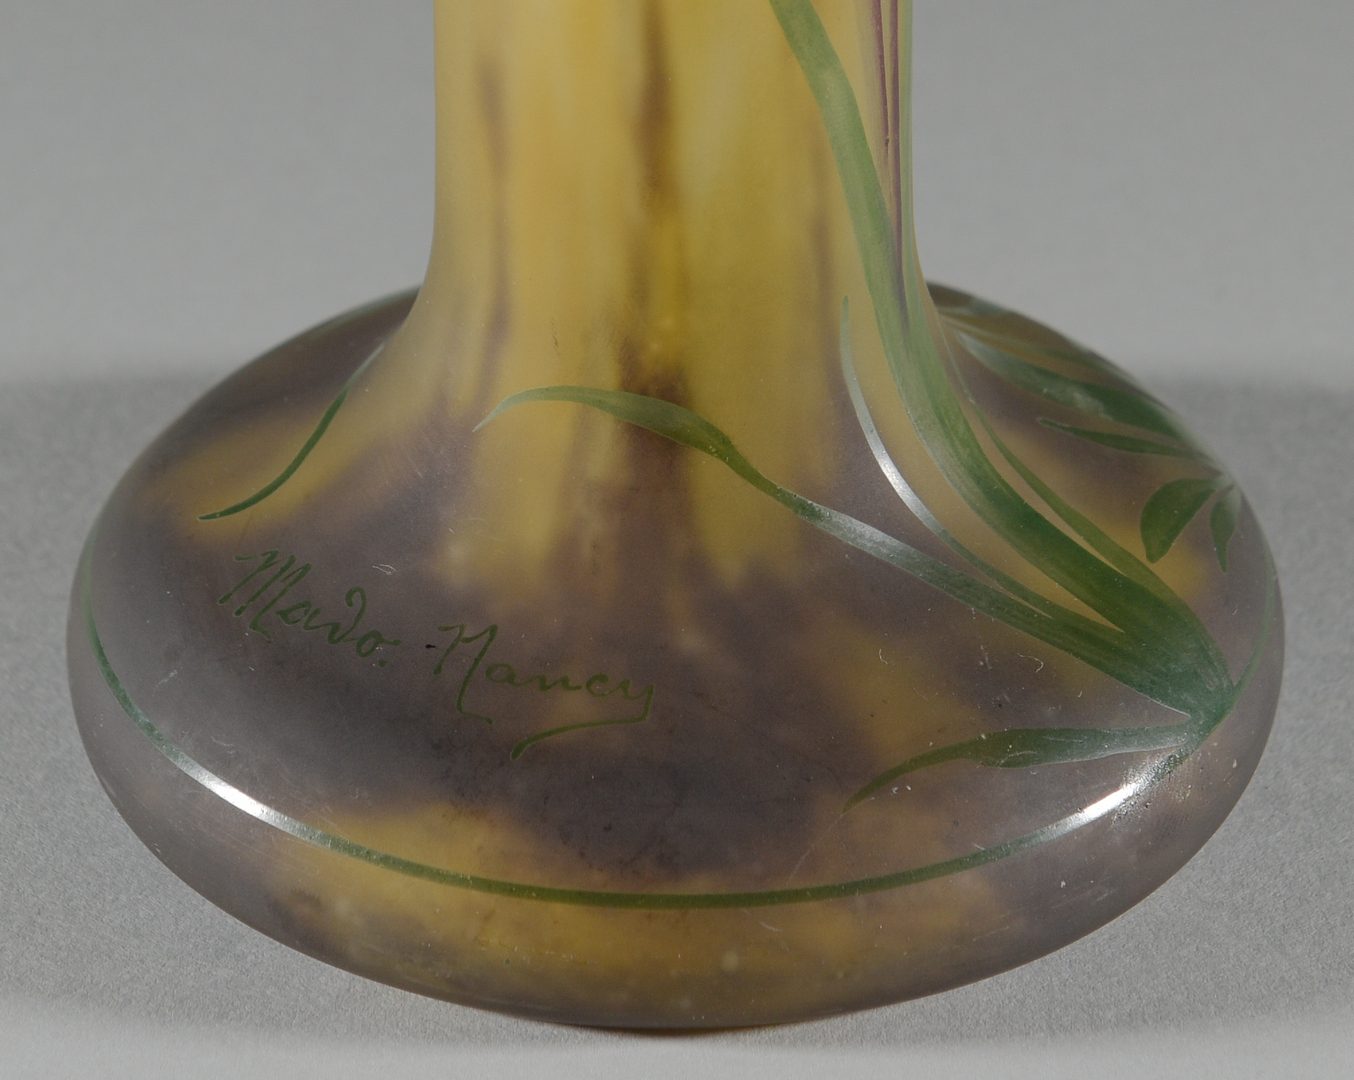 Lot 417: French Art Nouveau Glass Vase